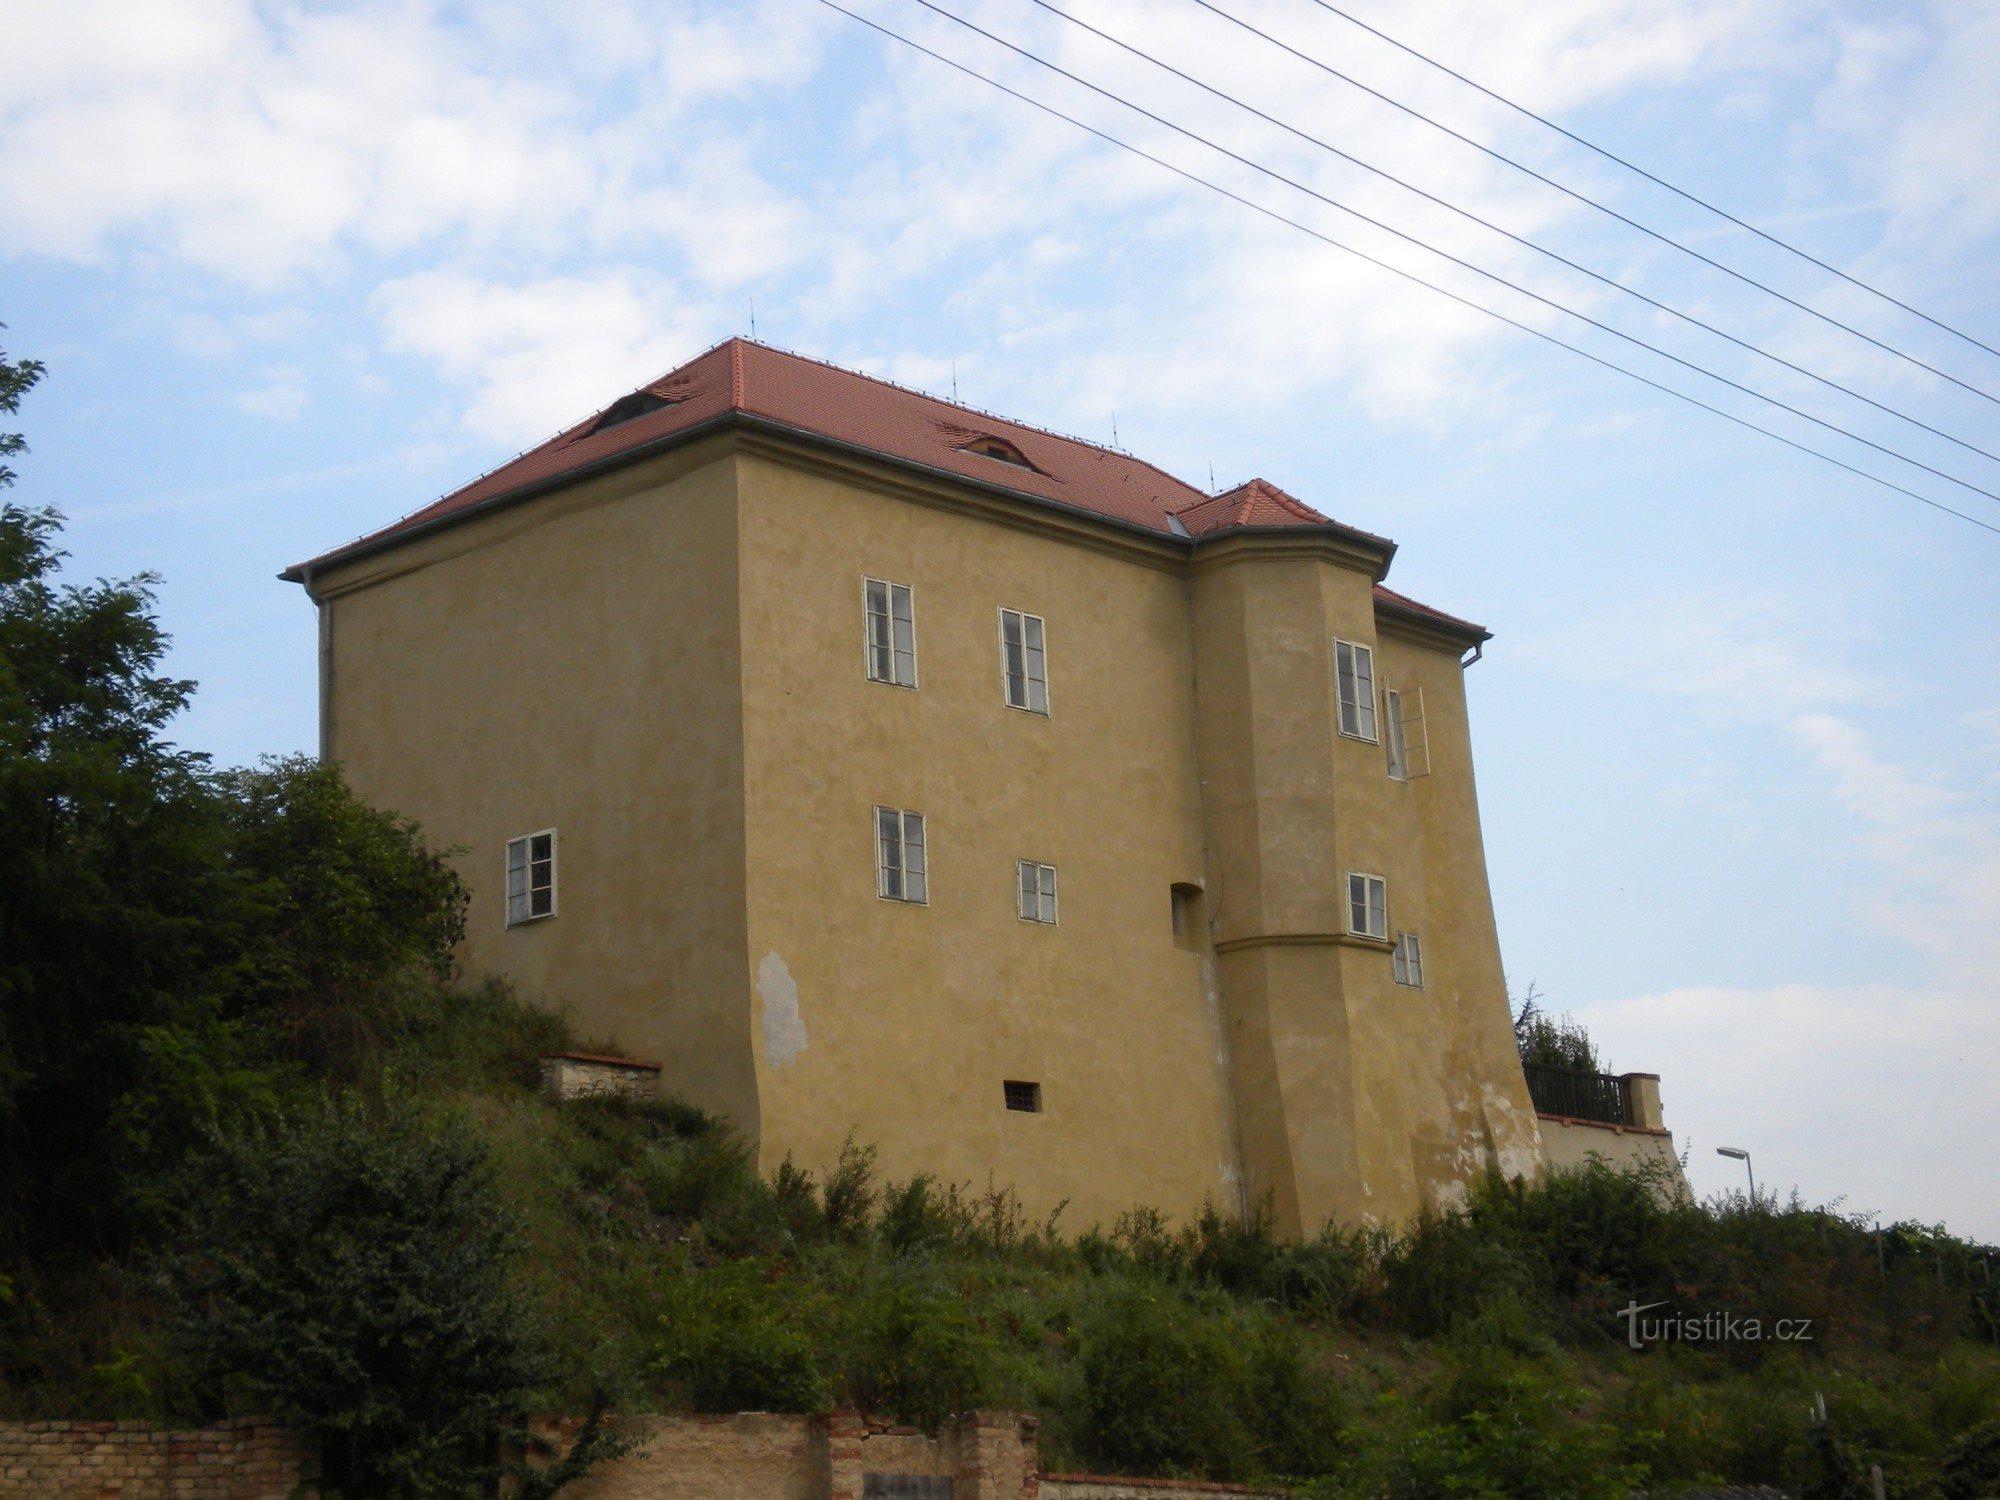 Φρούριο Brozany nad Ohří.